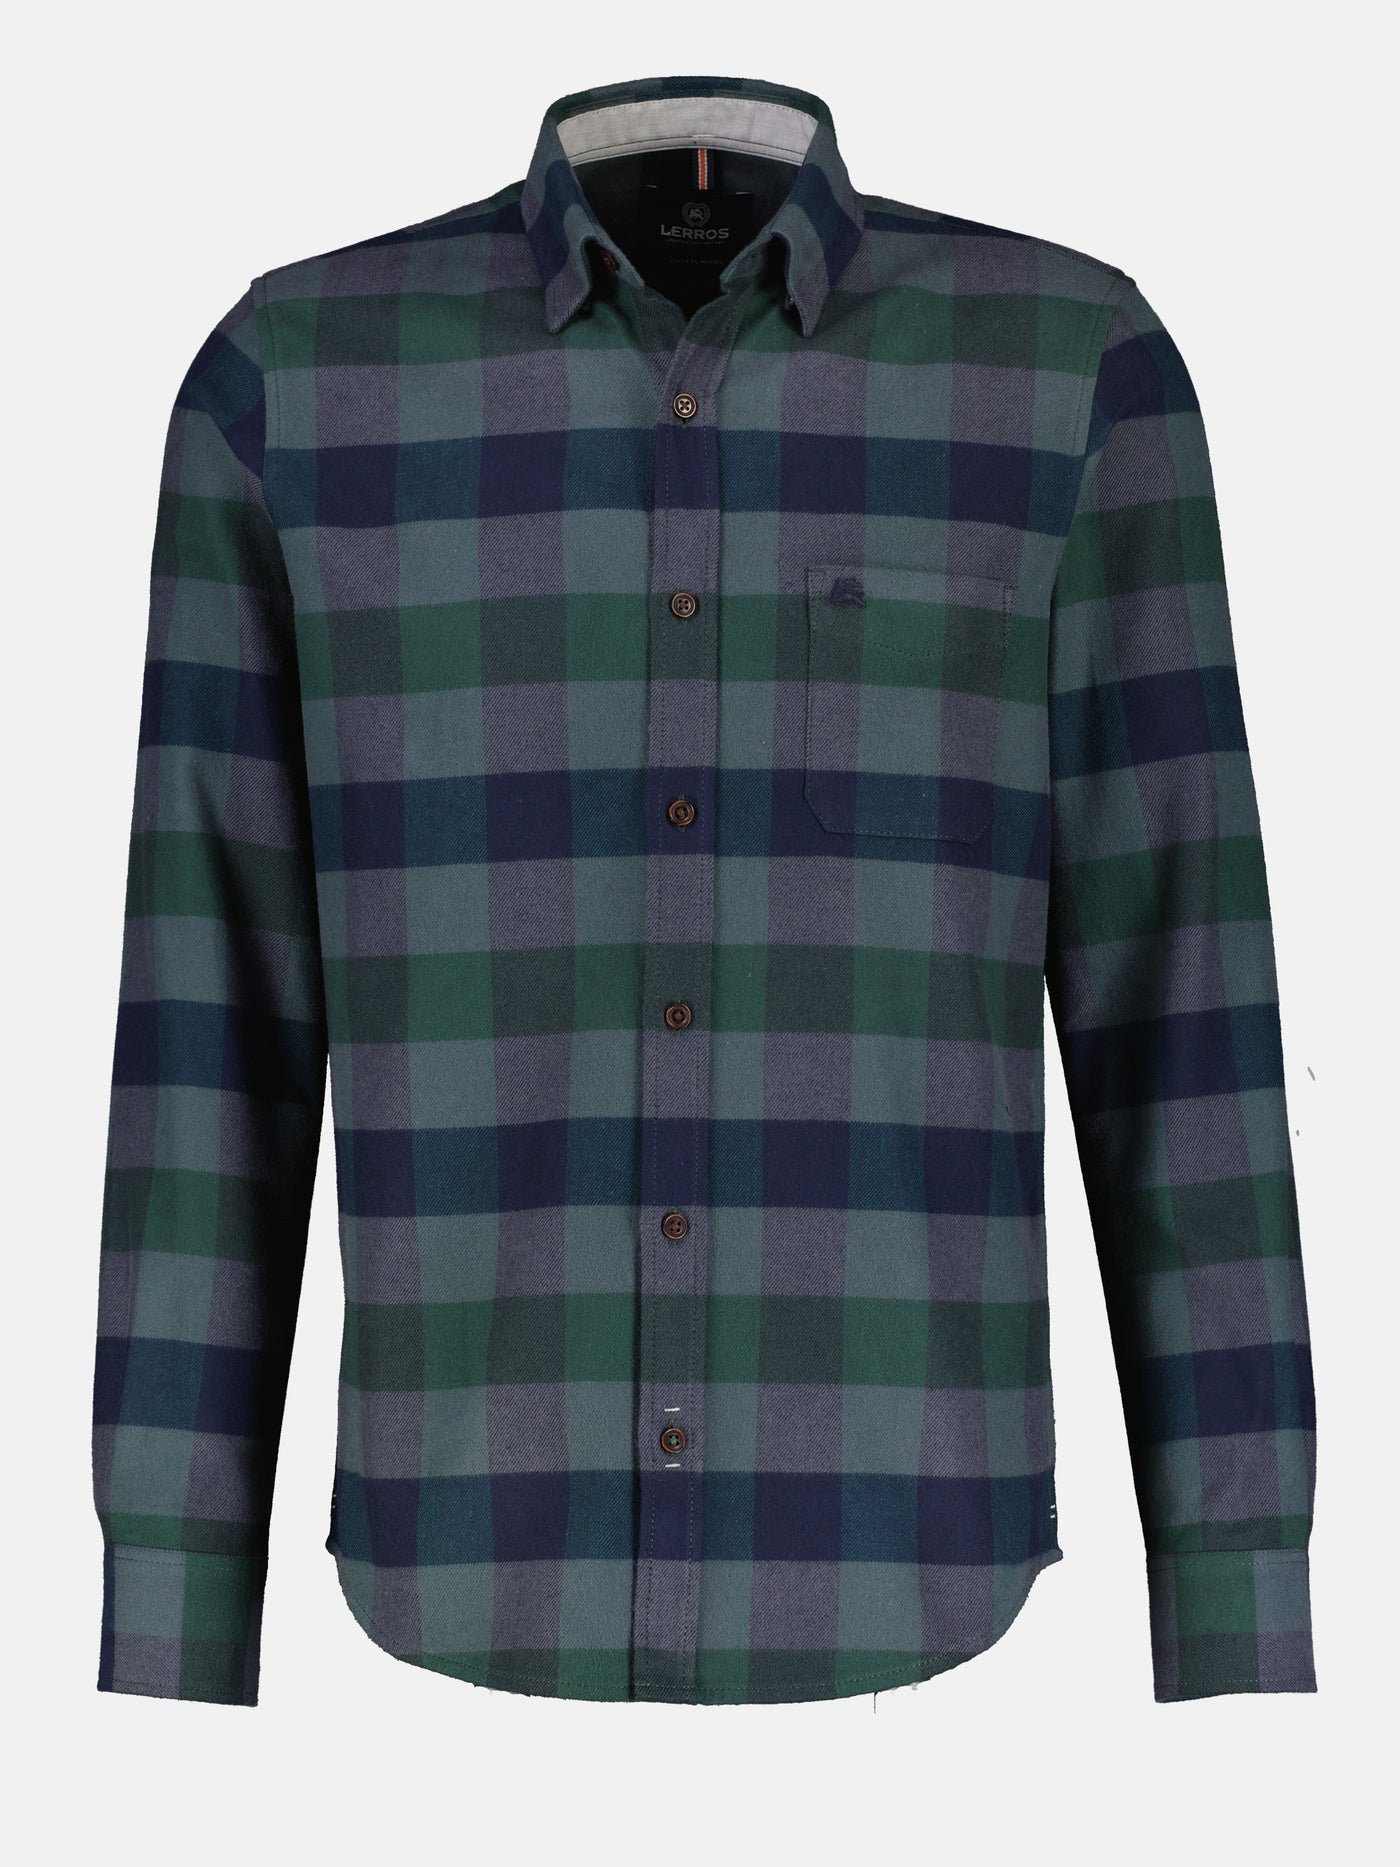 Twill quality flannel shirt